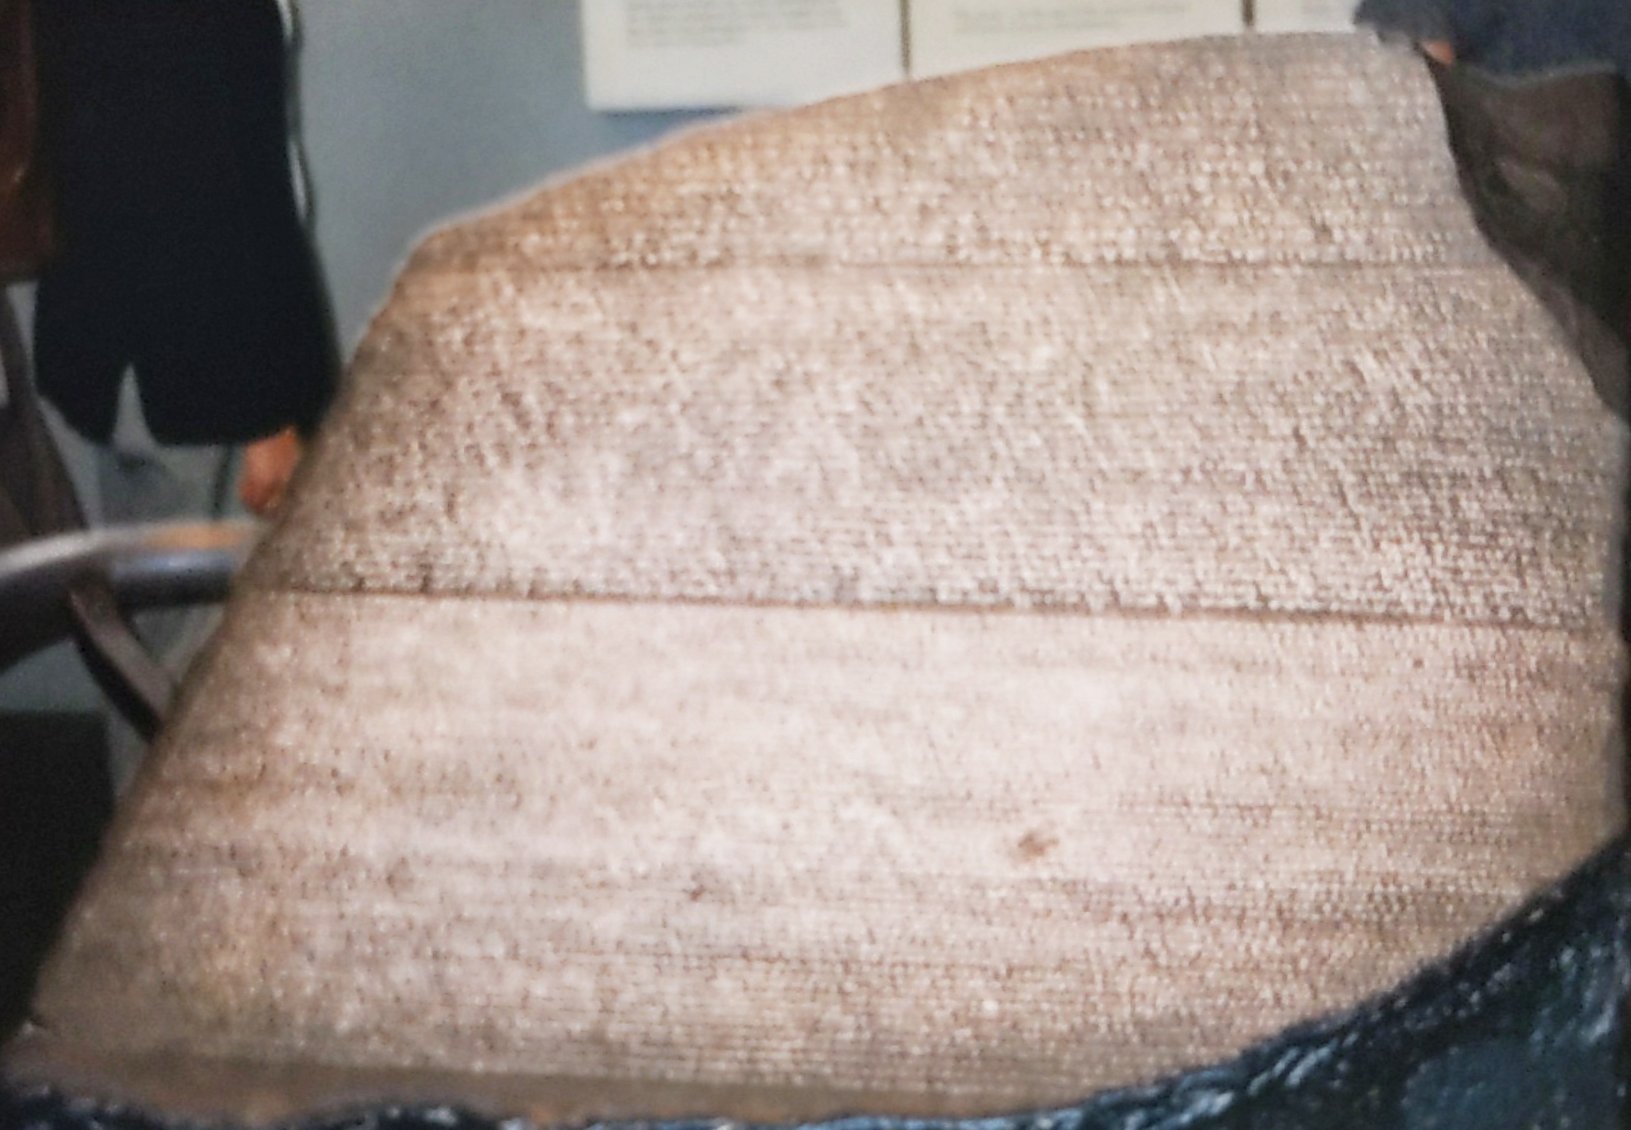 The Rosetta Stone, circa 1998